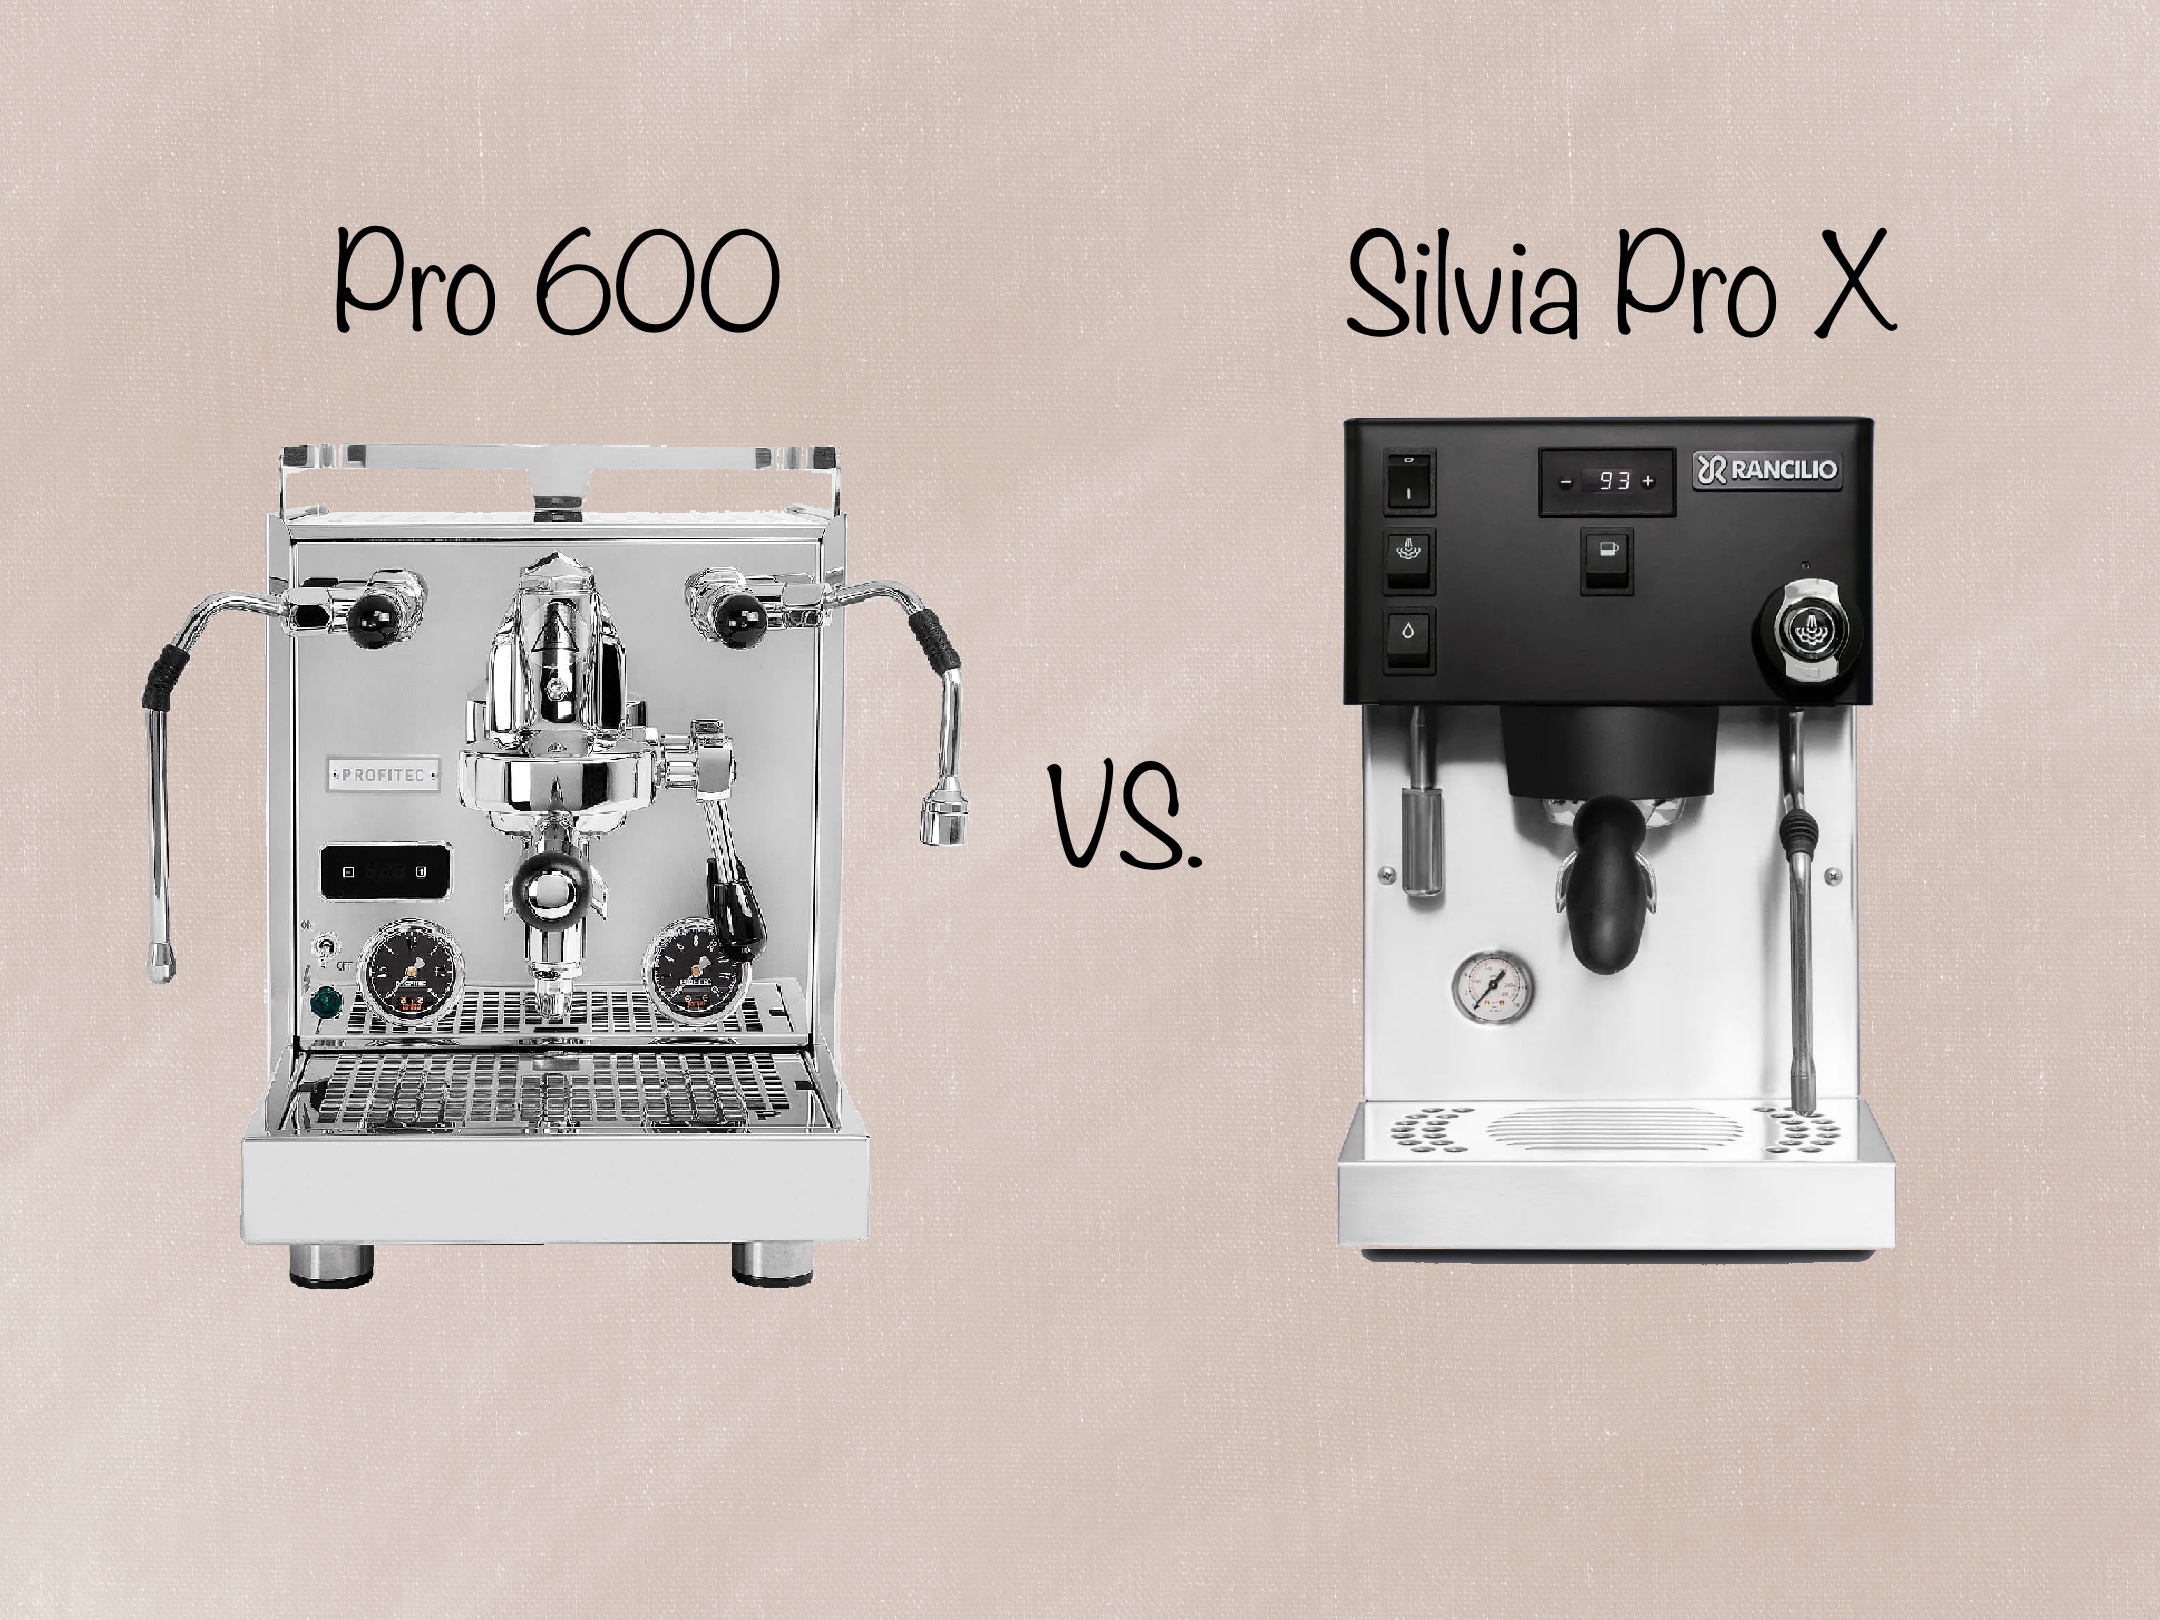 Profitec Pro 600 vs Rancilio Silvia Pro X